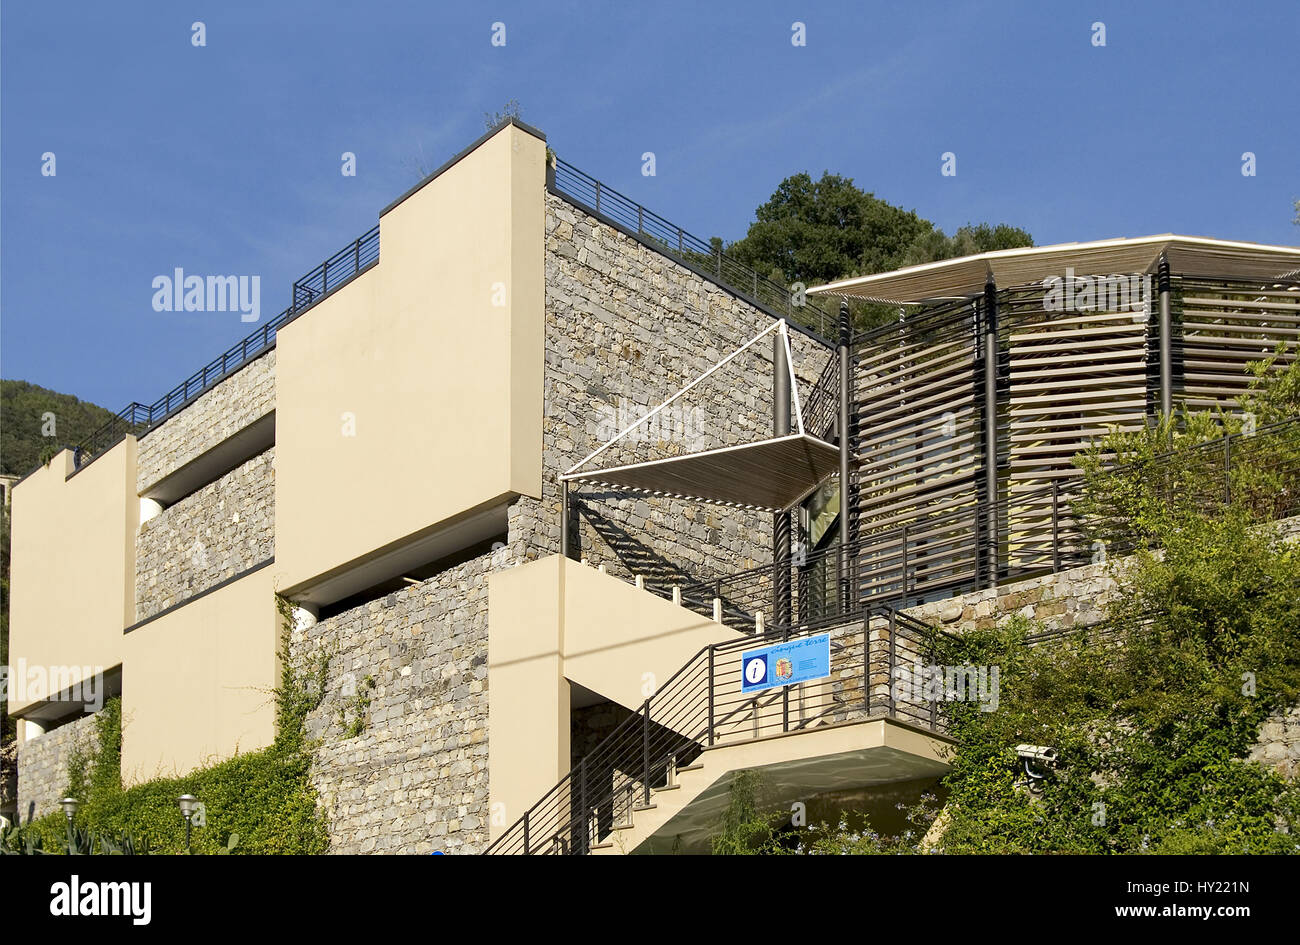 Image of the Cinque Terre Information Centre in Monterosso al Mare, Liguria, Italy.  Das Cinque Terre Informationszentrum in Monterosso al Mare in Lig Stock Photo